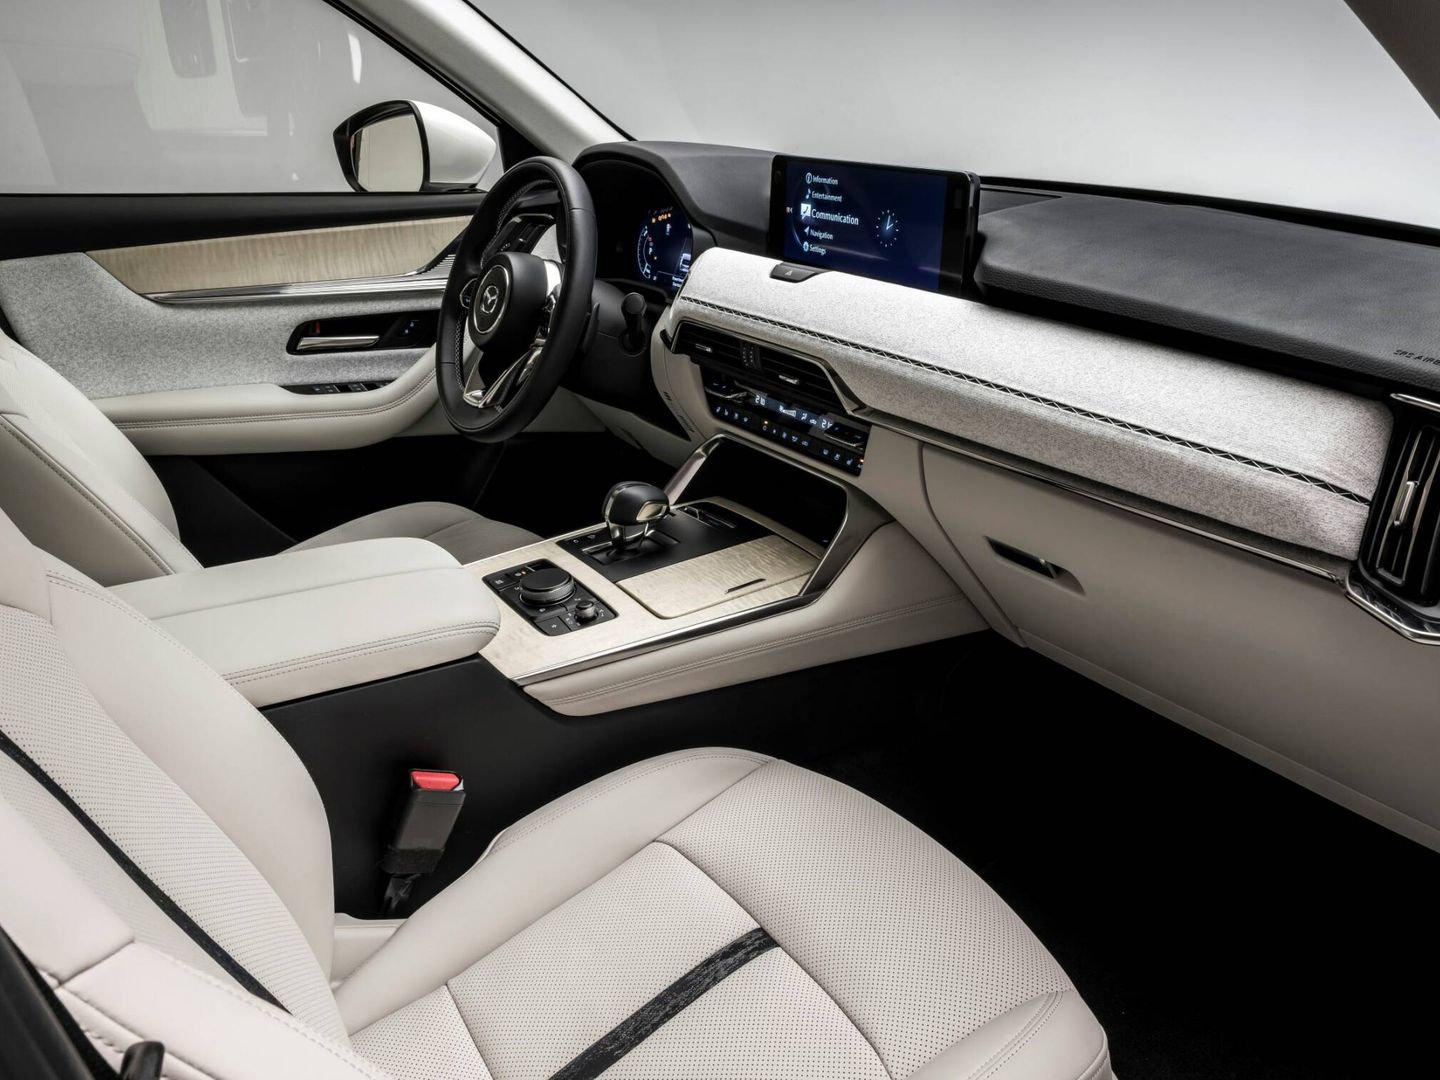 Mazda insiste en que el tratamiento del interior sorprenderá por su refinamiento y calidad.